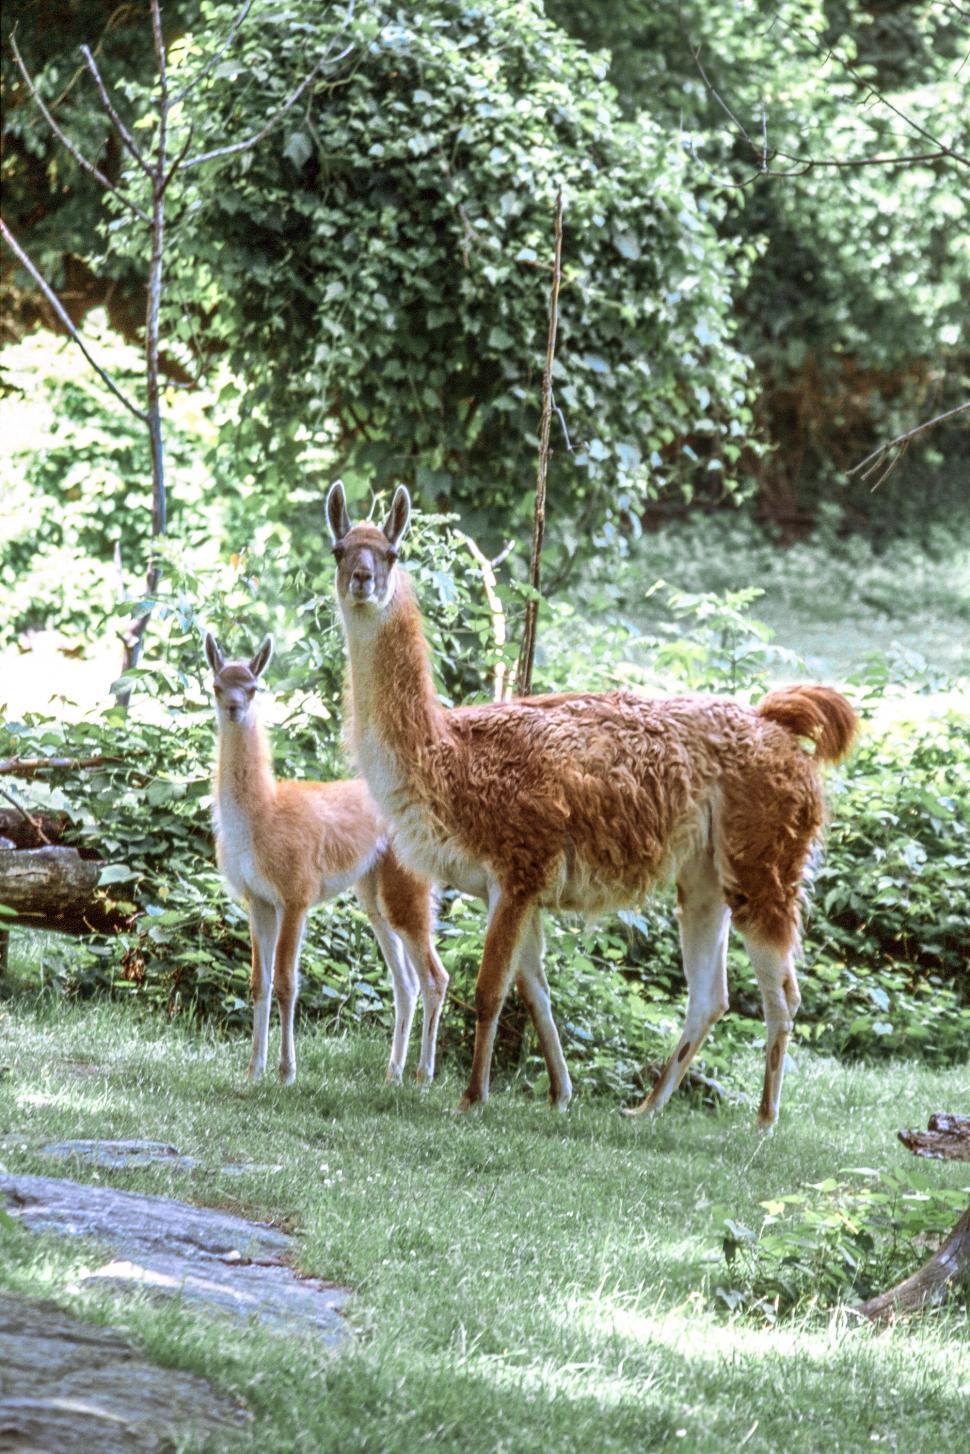 Free Image of Two Llamas 